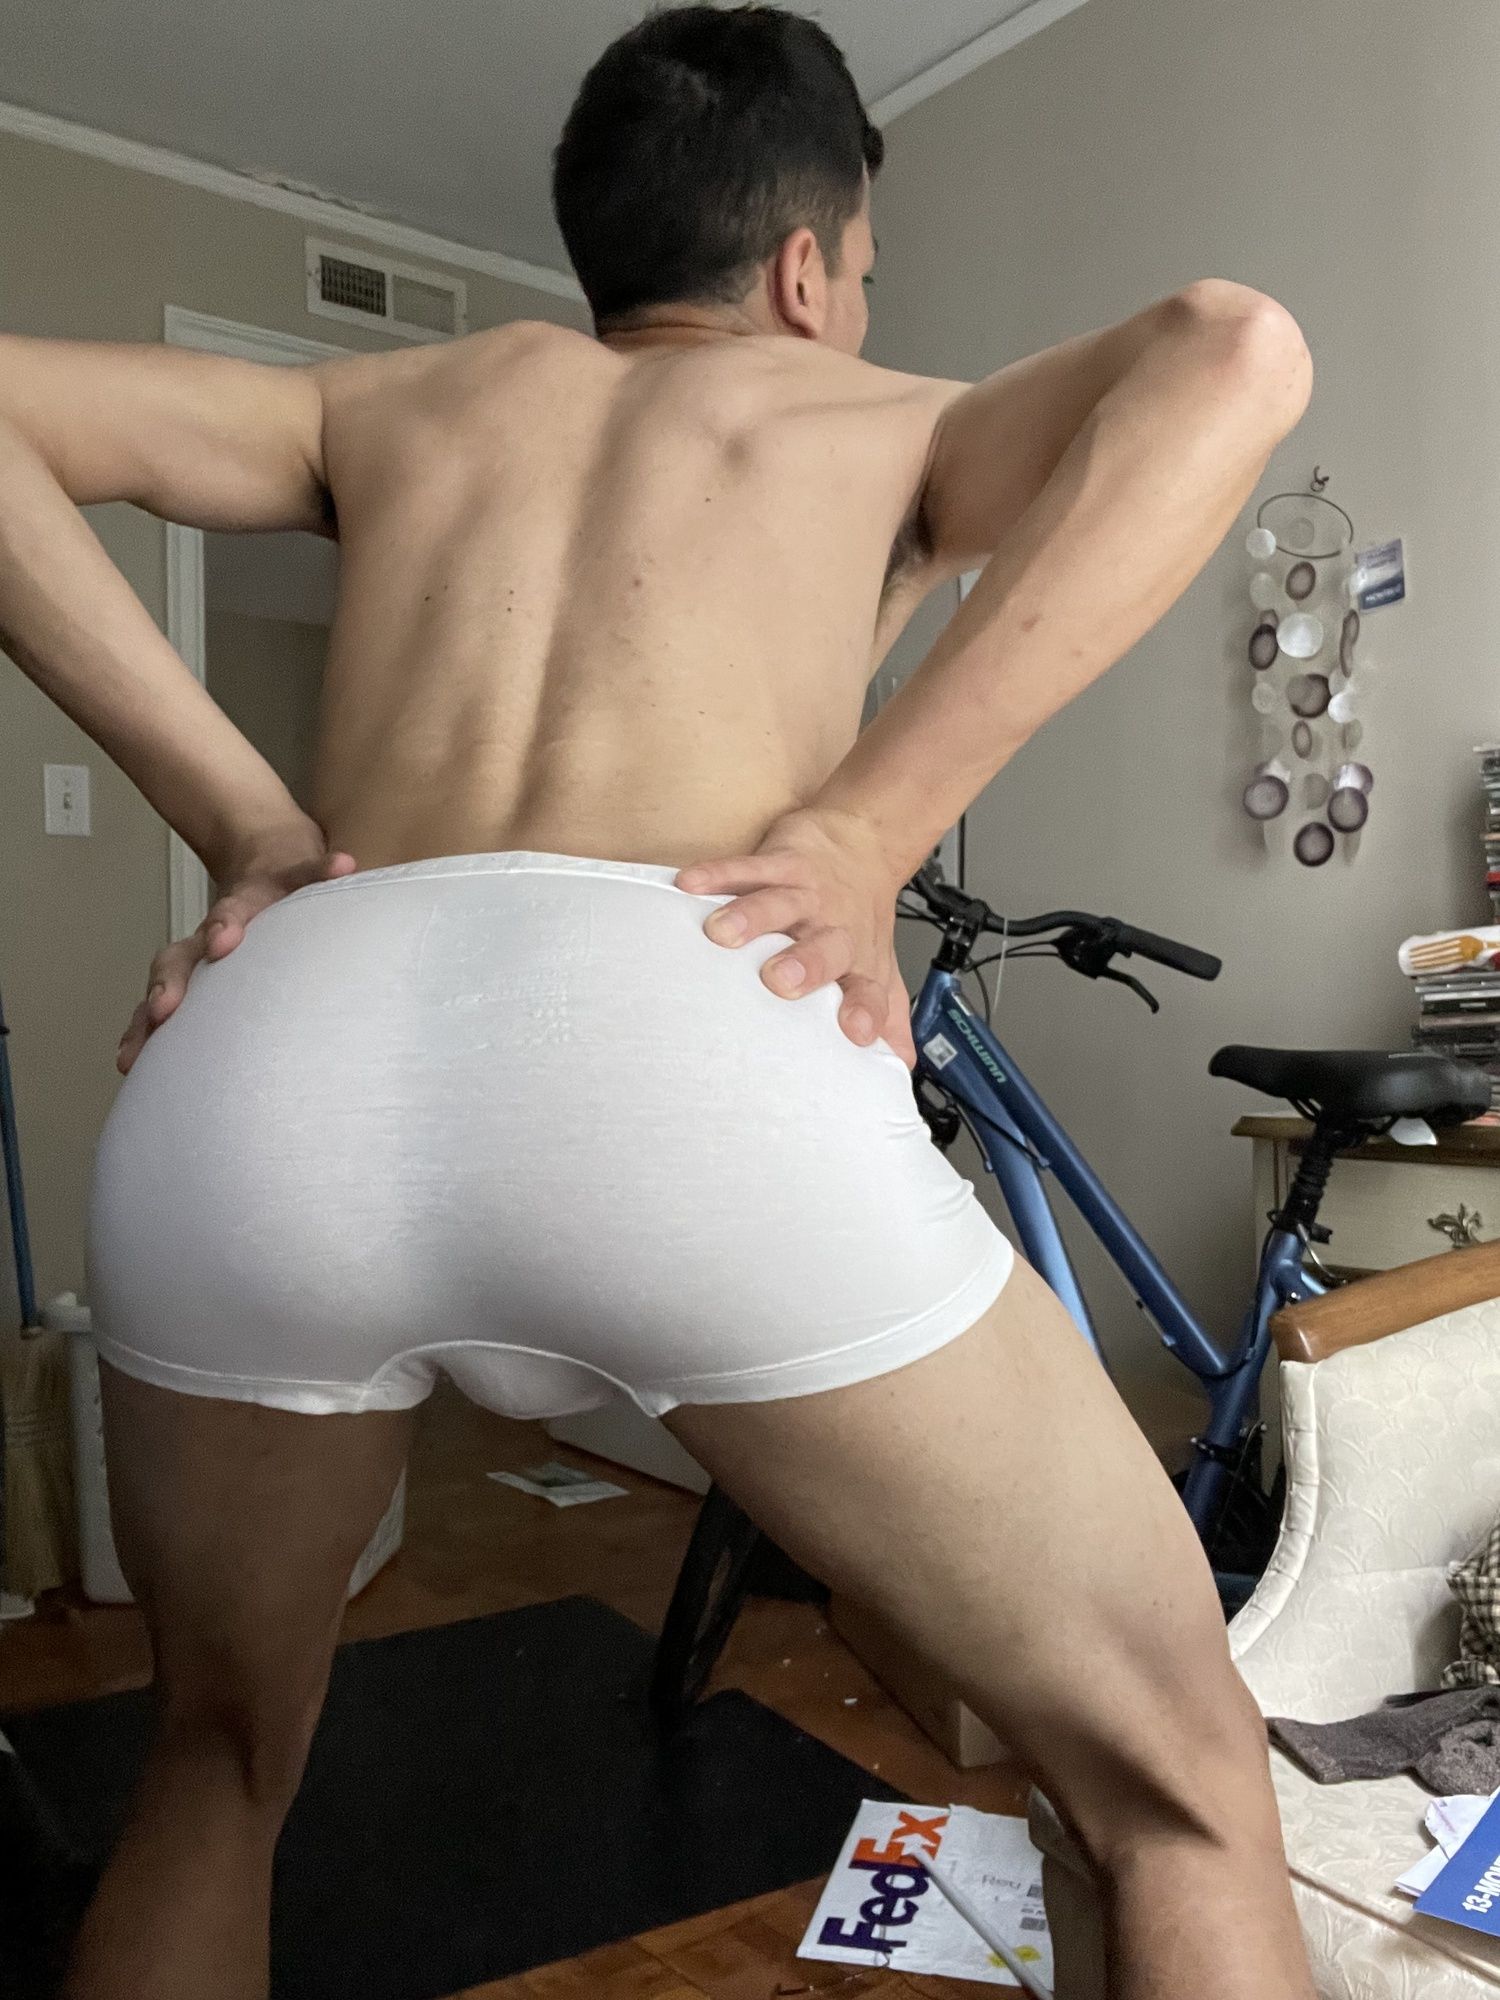 My ass pics